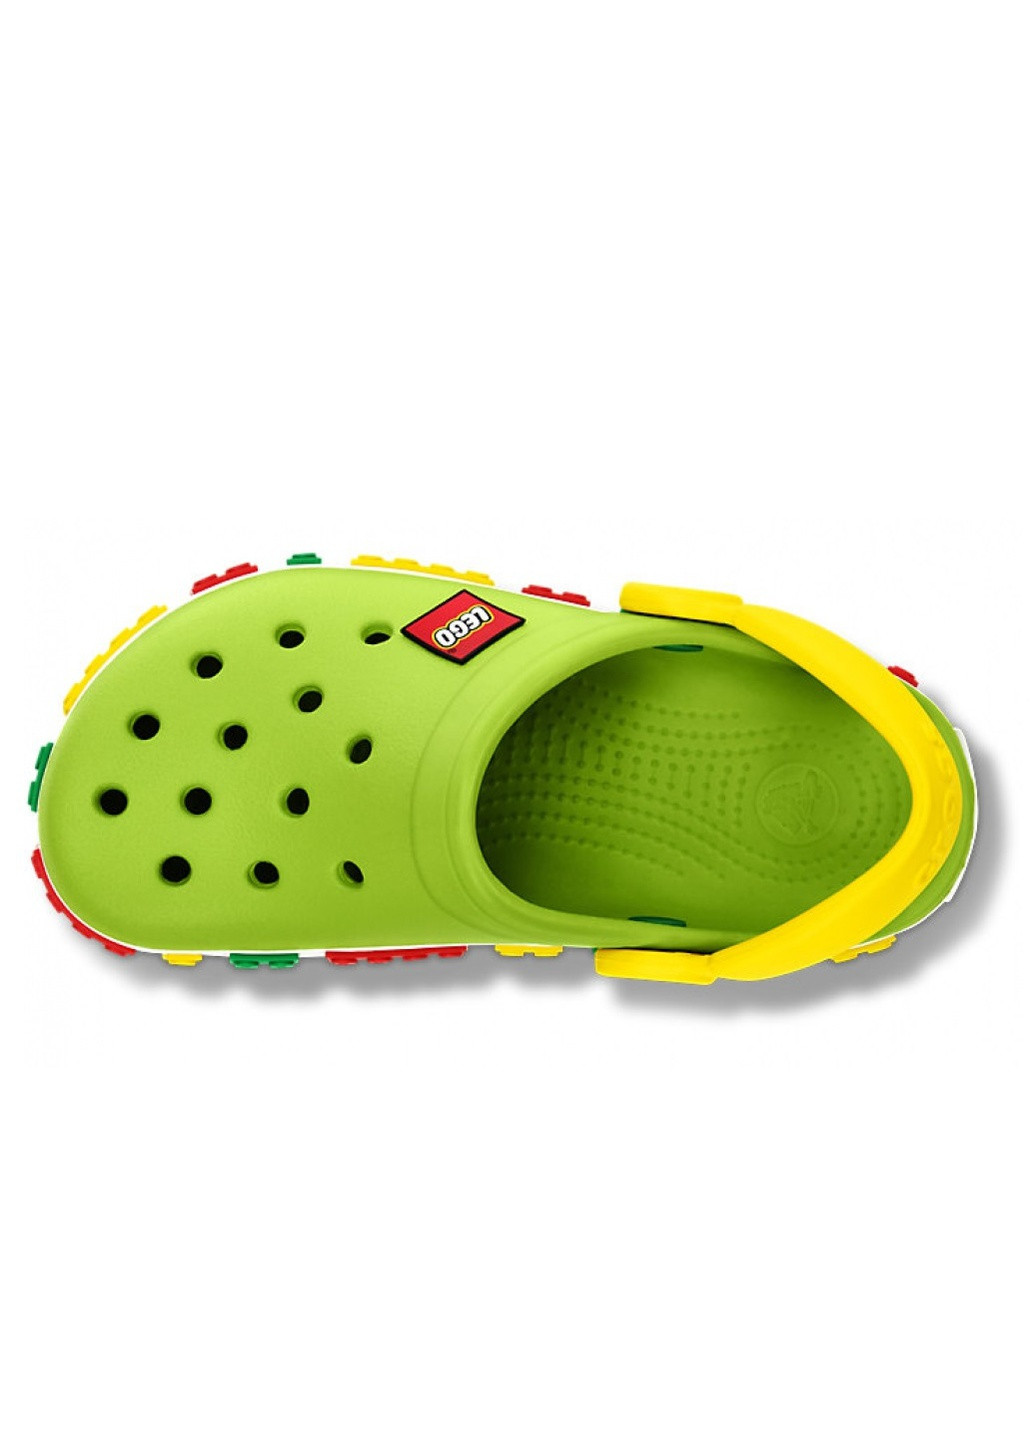 Детские Зеленые сабо Crocs lego kids (239342801)